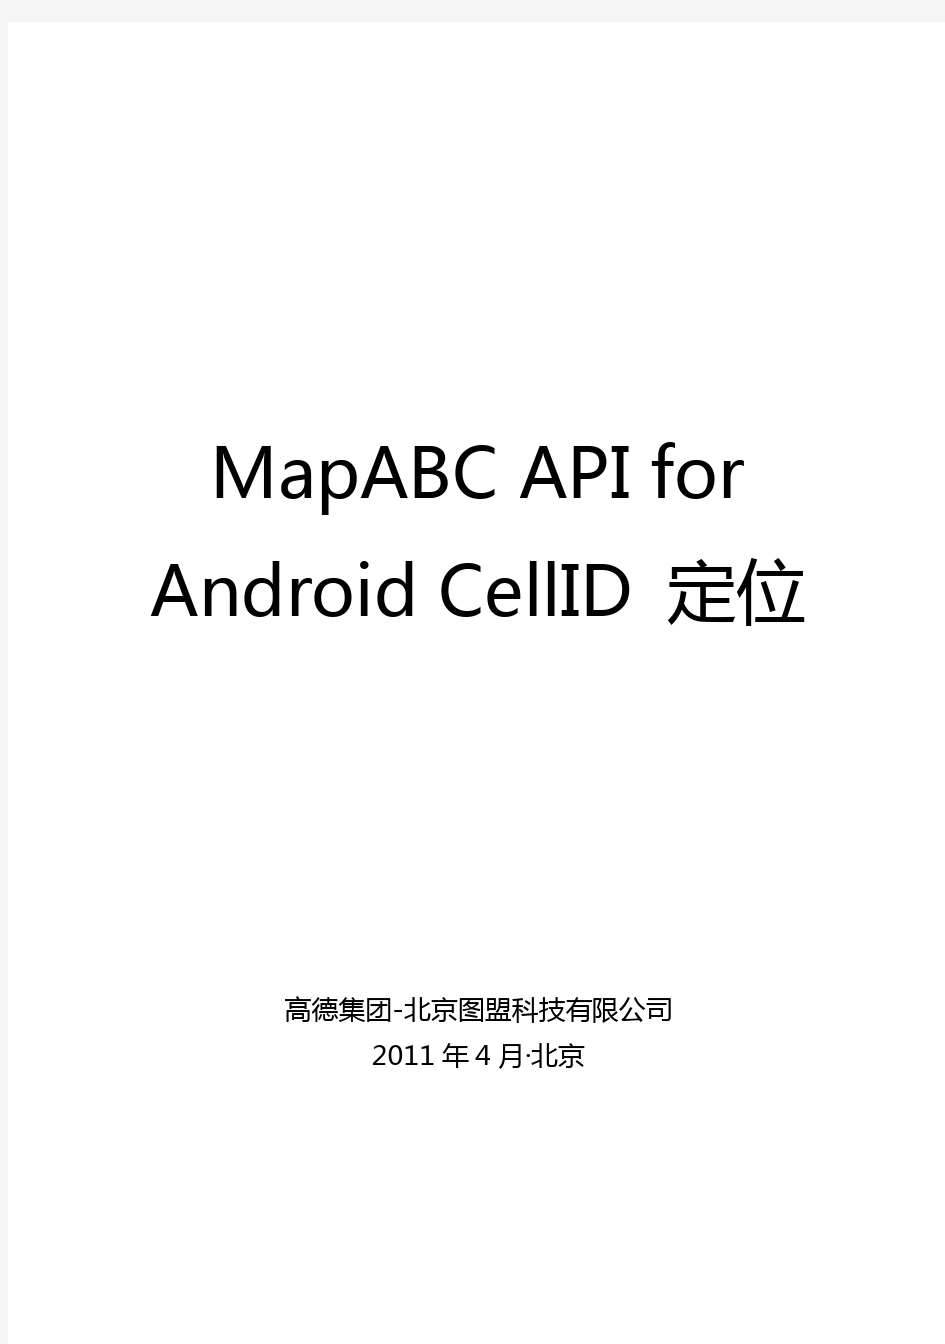 高德MapABC API for Android CellID定位